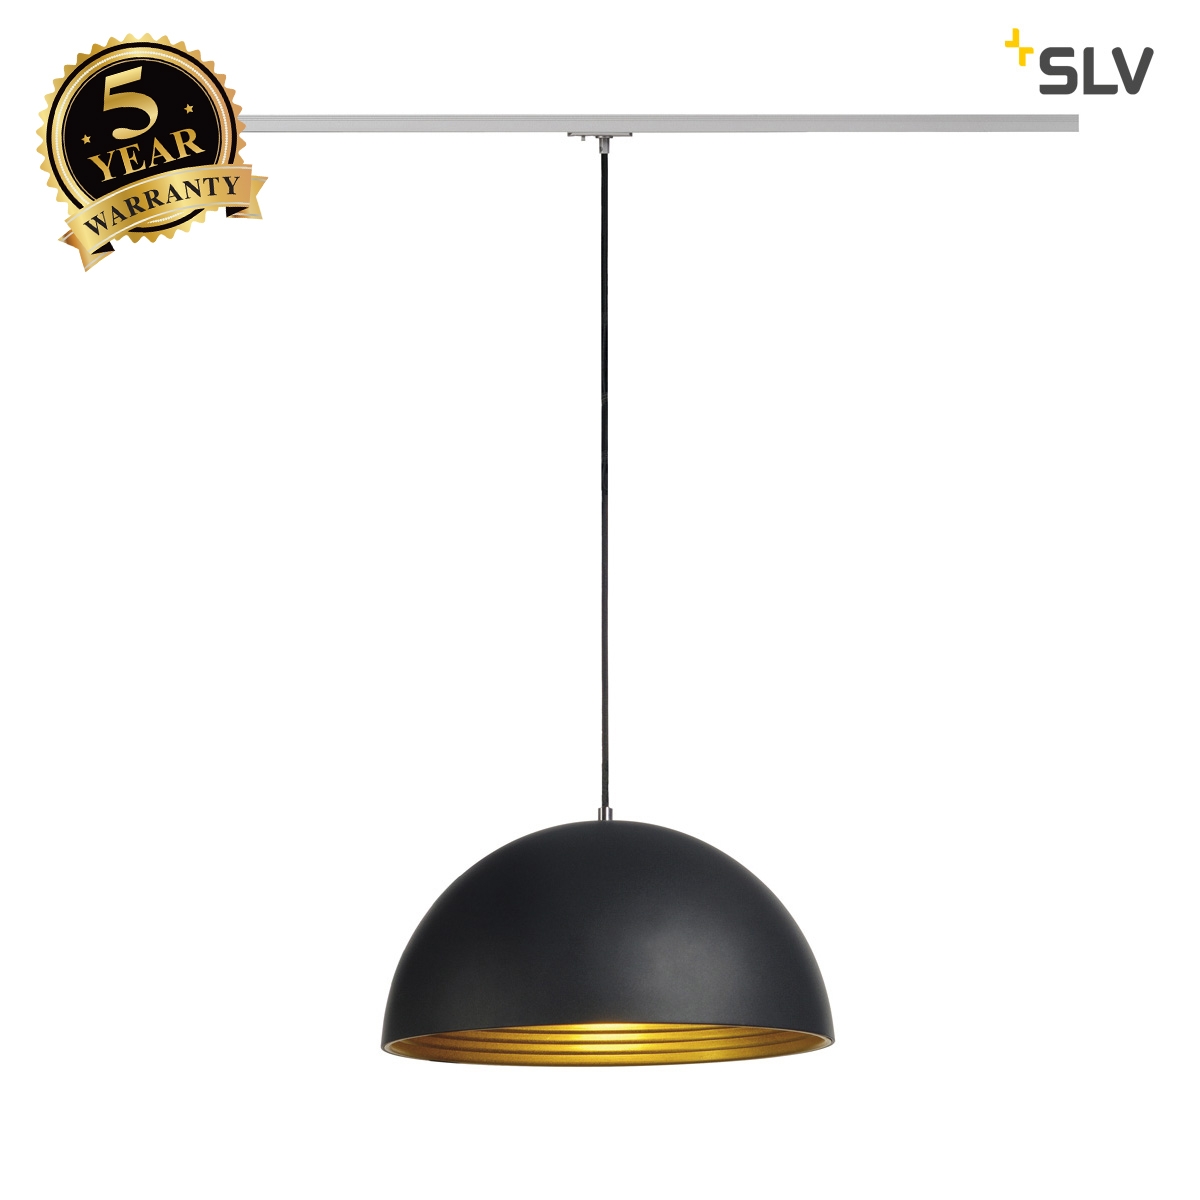 SLV FORCHINI M pendant, 40cm, round, black/gold, E27, incl. silver 1-circuit adapter 143930